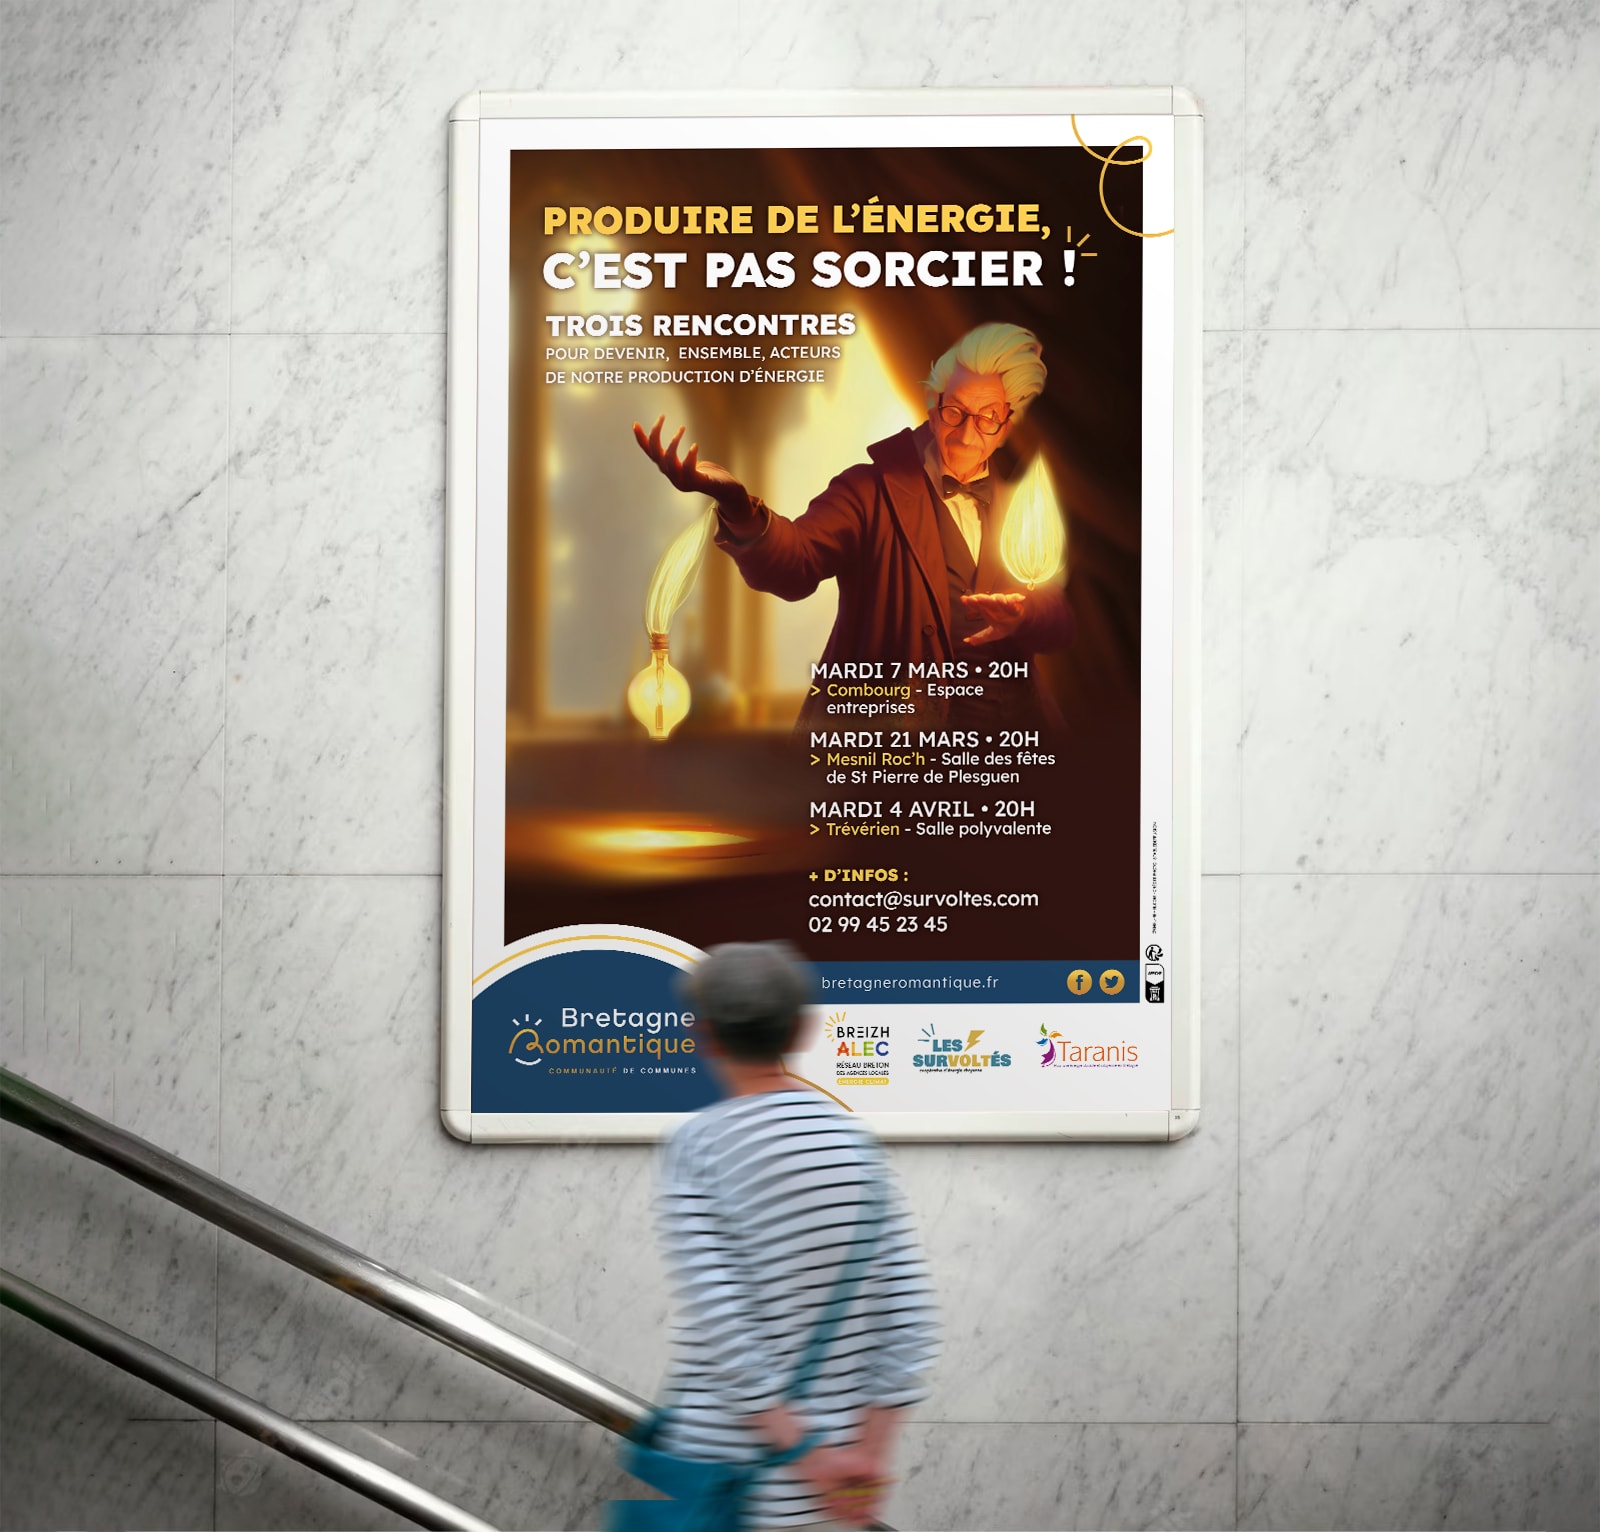 Bretagne romantique - Campagne "Produire de l'énergie, c'est pas sorcier!" - Affiche